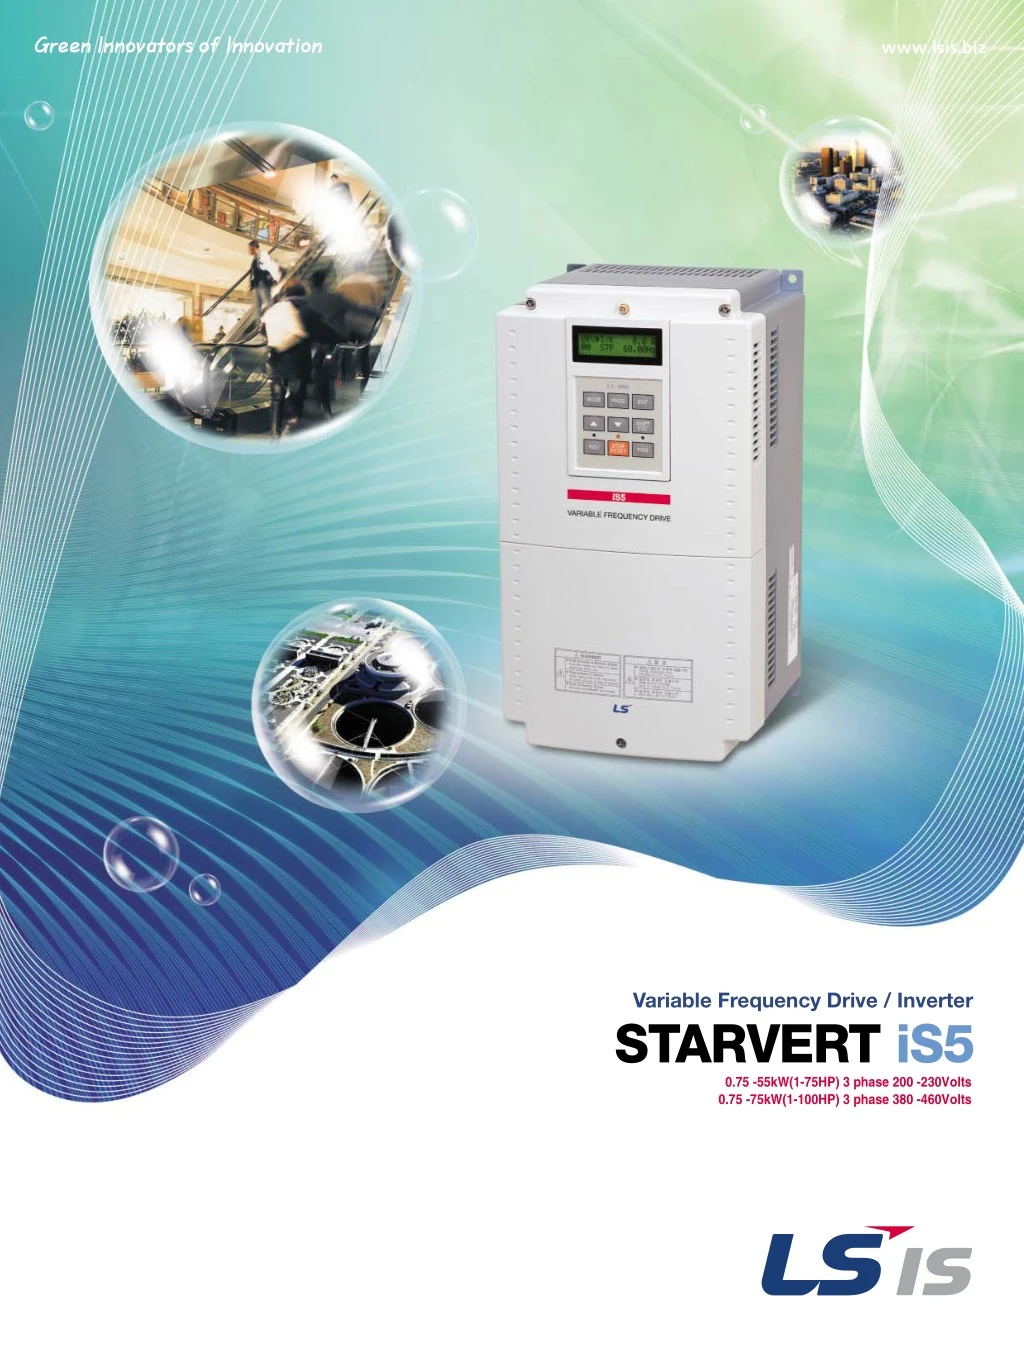 variable frequency drive inverter starvert